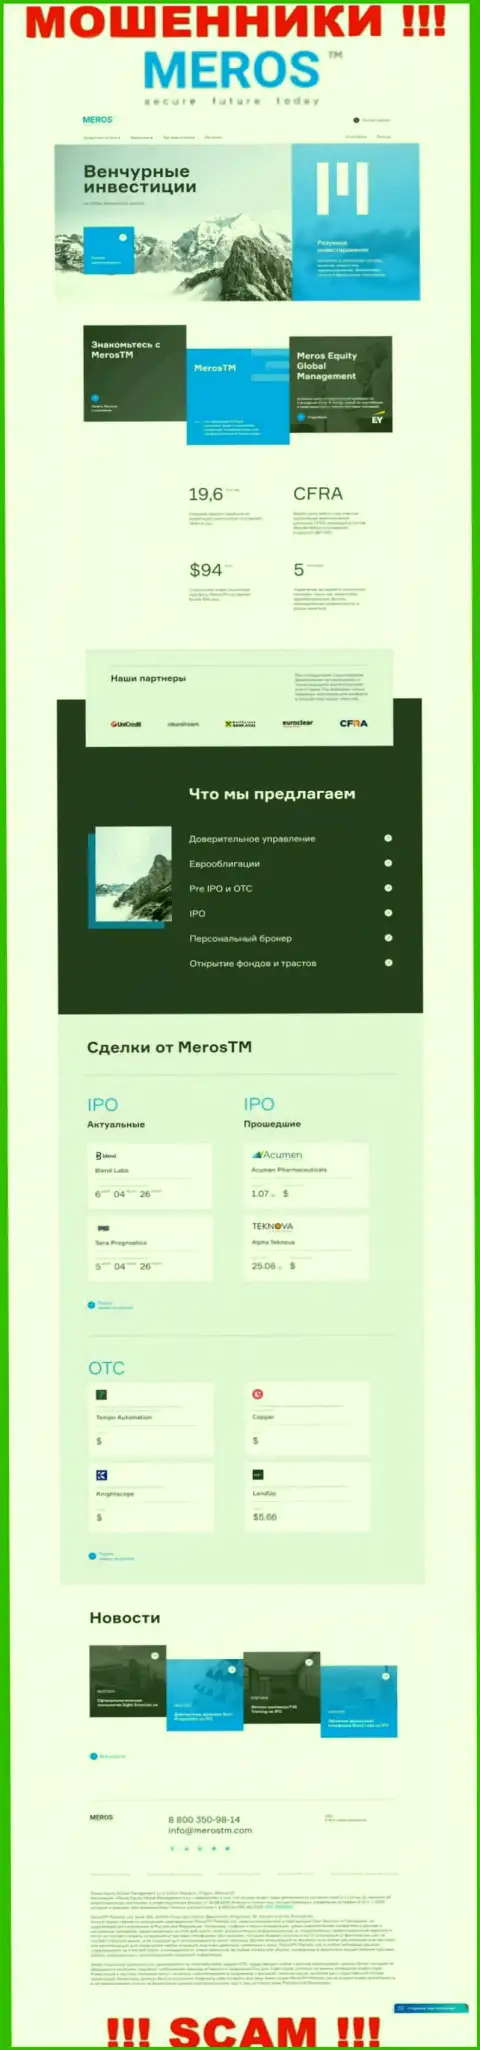 Разбор официального интернет-сервиса мошенников MerosTM